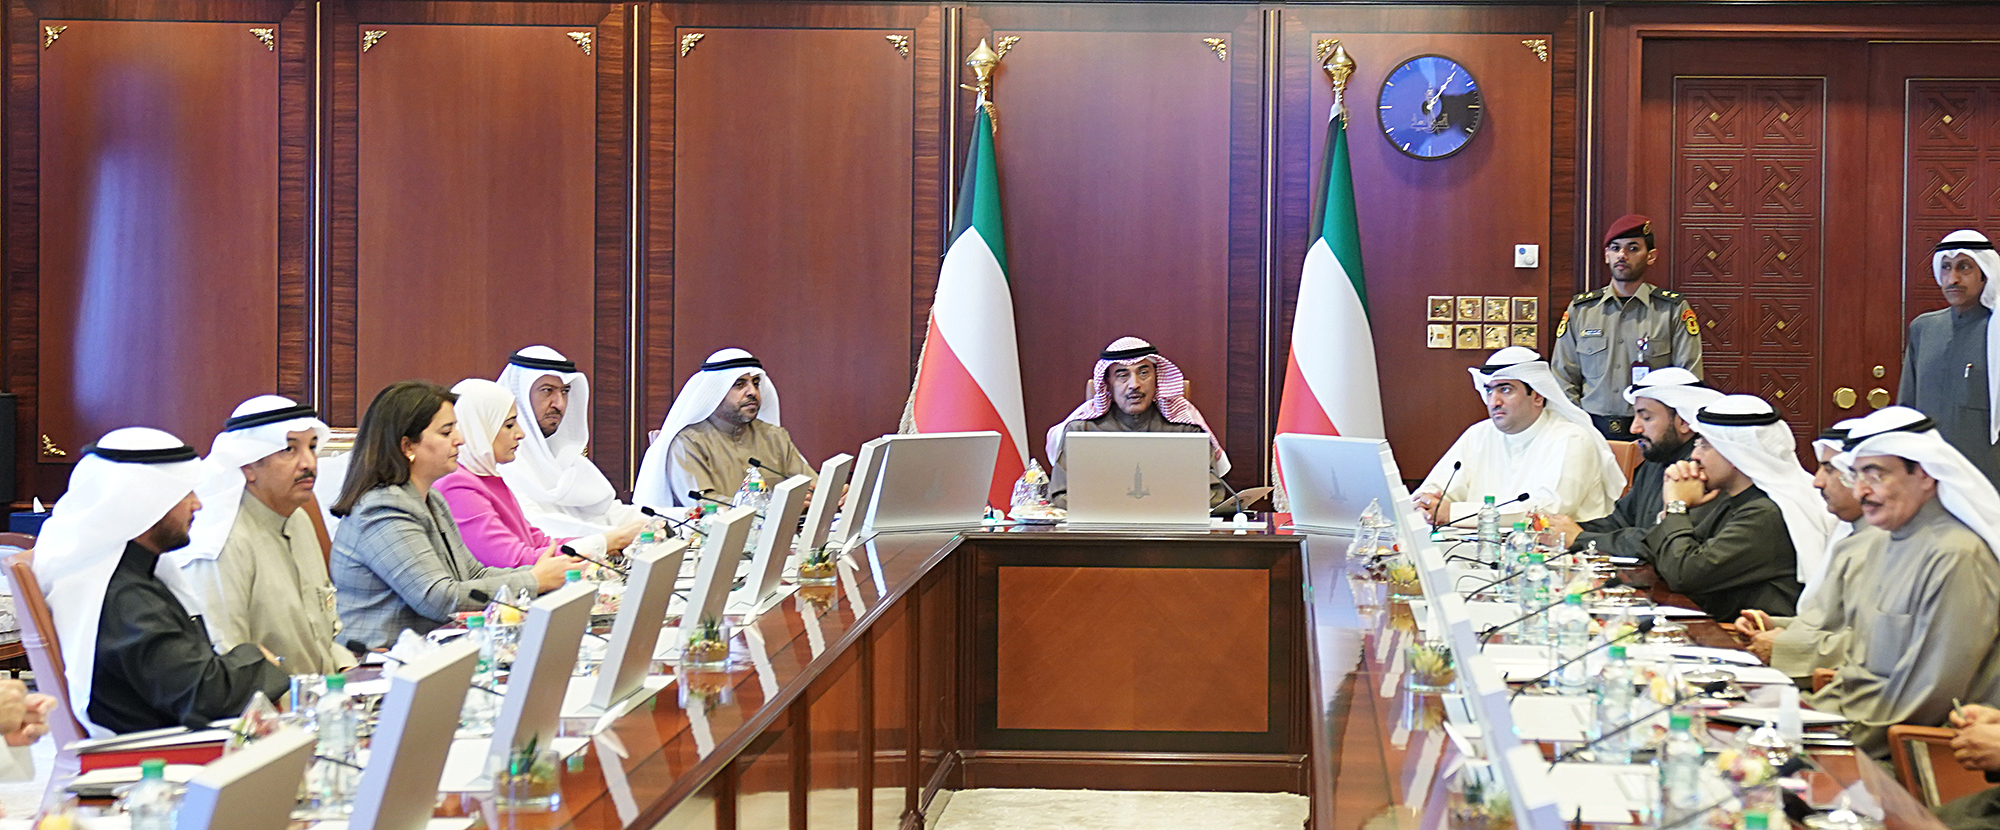 سمو الشيخ صباح خالد الحمد الصباح يترأس الاجتماع الاستثنائي لمجلس الوزراء